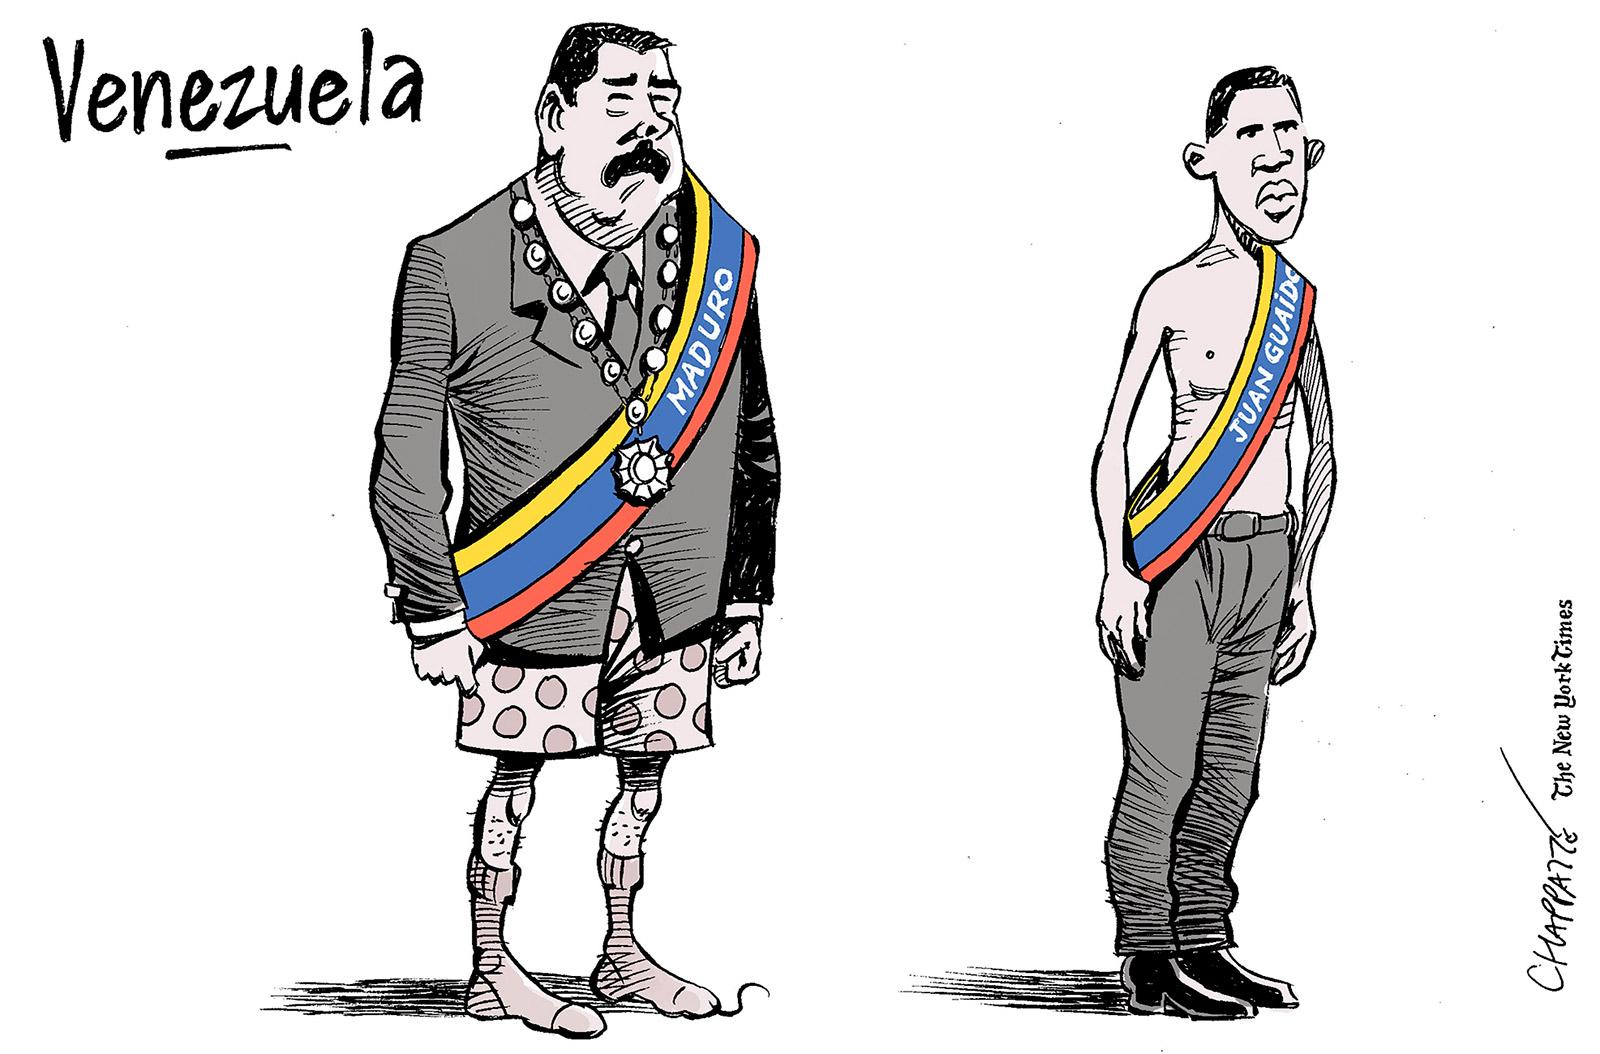 Deux présidents au Vénézuela